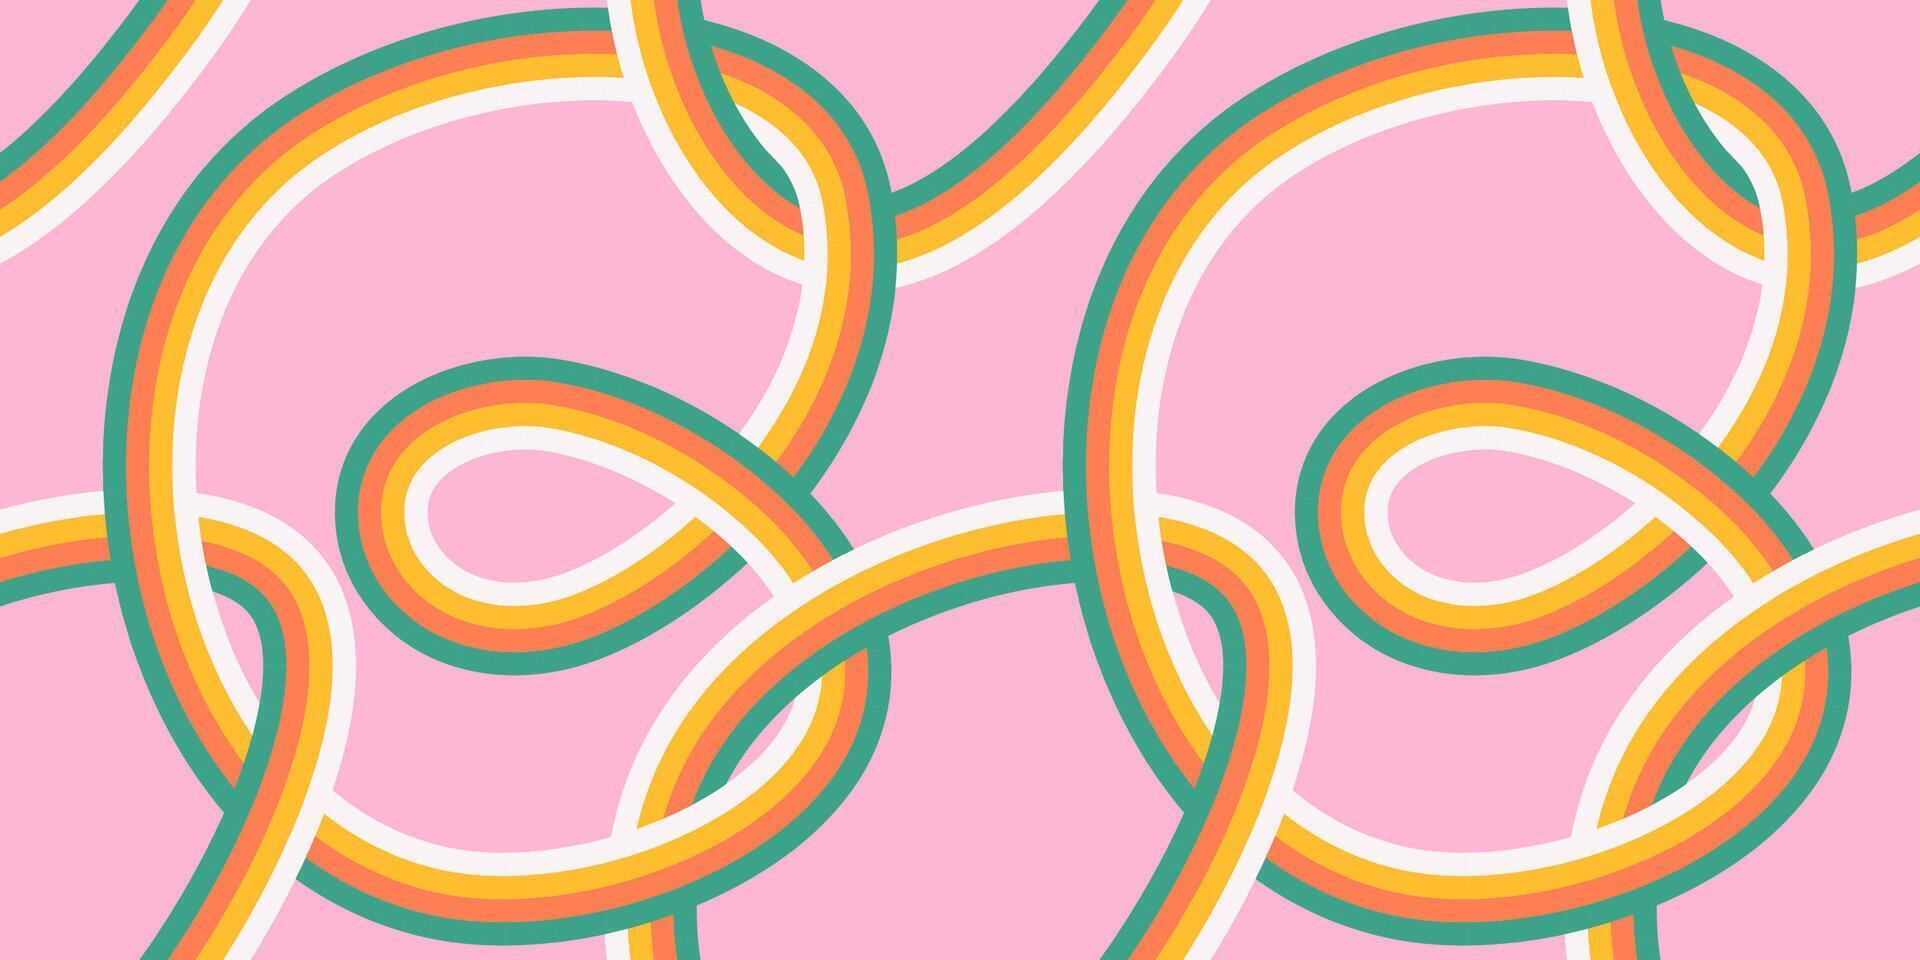 70s sömlös mönster med geometrisk tilltrasslad slingor. retro färgrik linje regnbåge sömlös bakgrund i sjuttiotalet stil. häftig klippbok papper bakgrund. pastell årgång färger vektor illustration.